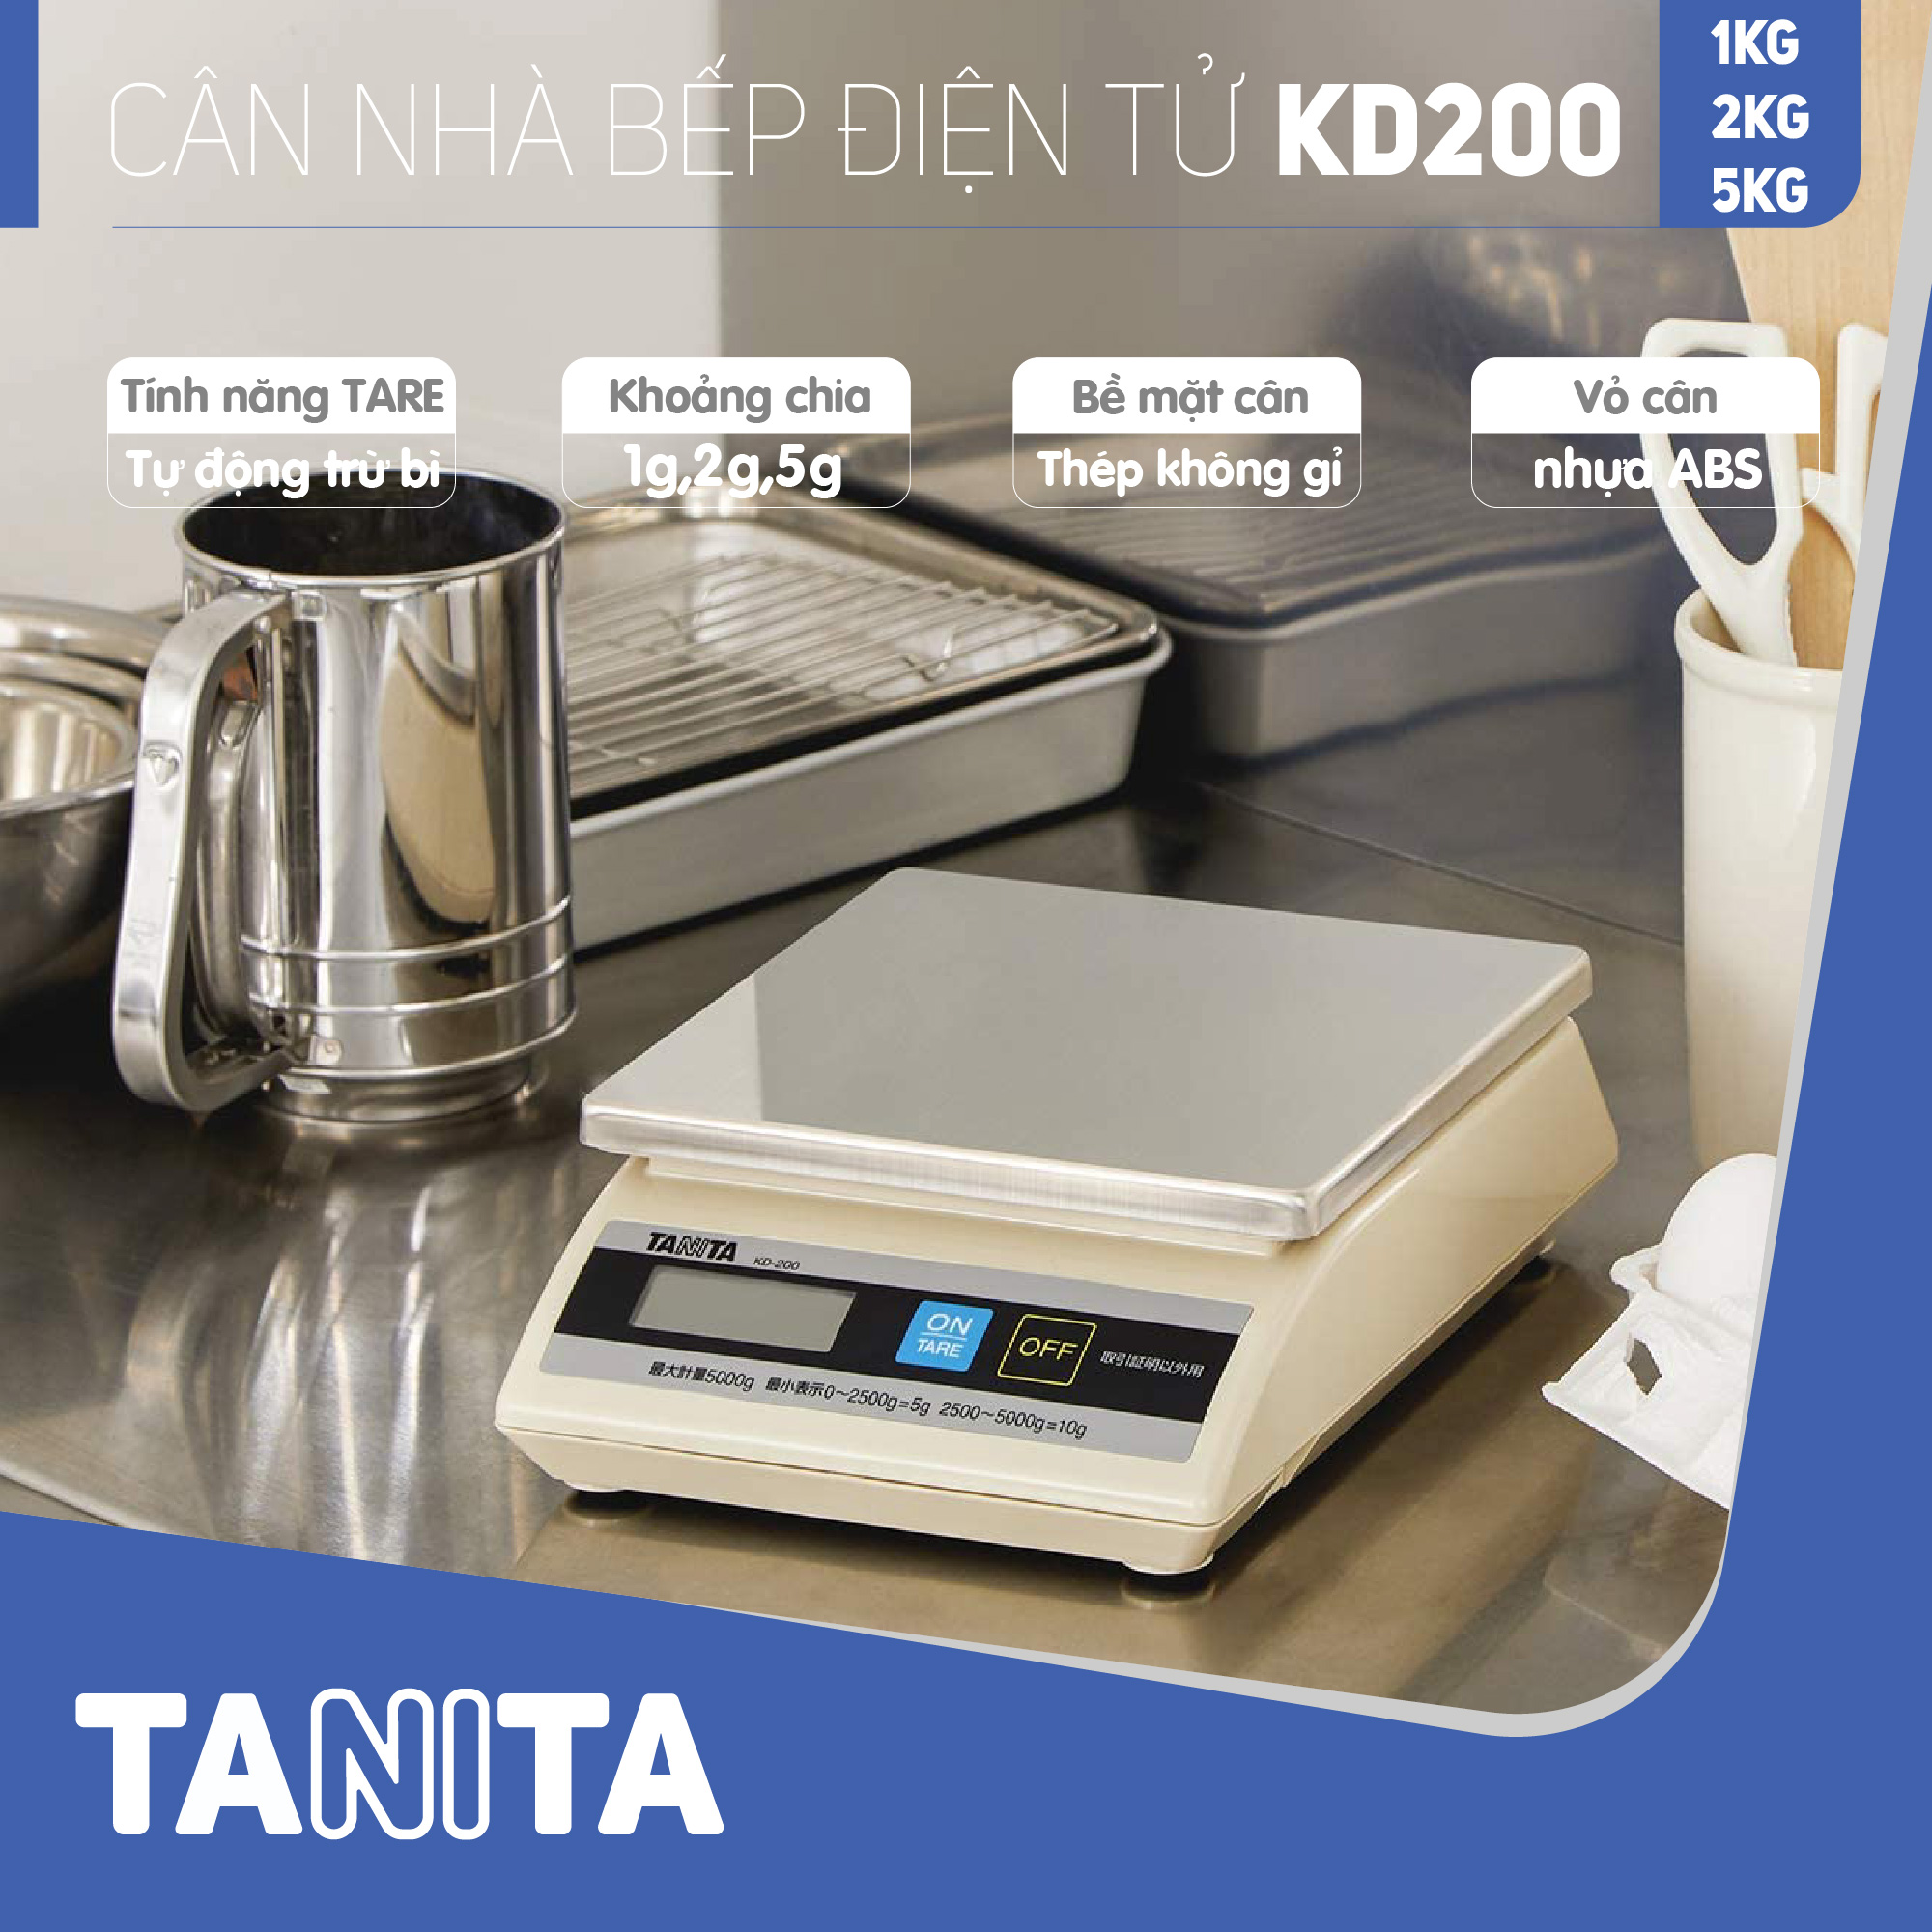 Cân điện tử nhà bếp TANITA KD200 (Chính hãng Nhật Bản), Cân nhà bếp 1kg, Cân nhà bếp 2kg, Cân nhà bếp 5kg, Cân Nhật, Cân trọng lượng, Cân chính hãng, Cân thực phẩm, Cân thức ăn, Cân tiểu ly điện tử, Cân chính xác